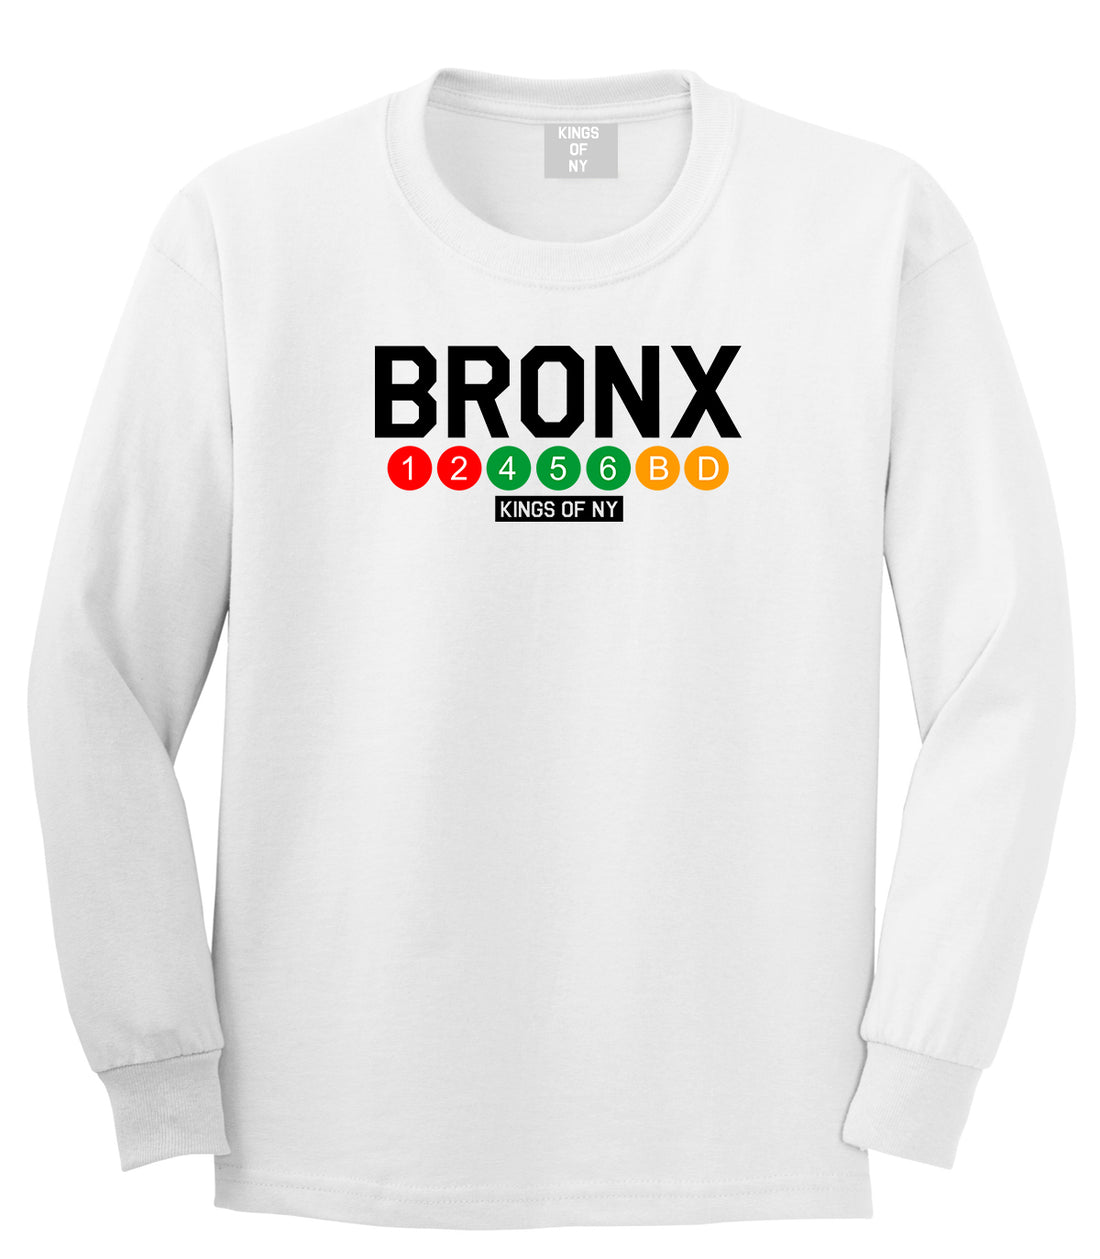 Bronx Transit Logos Long Sleeve T-Shirt in White